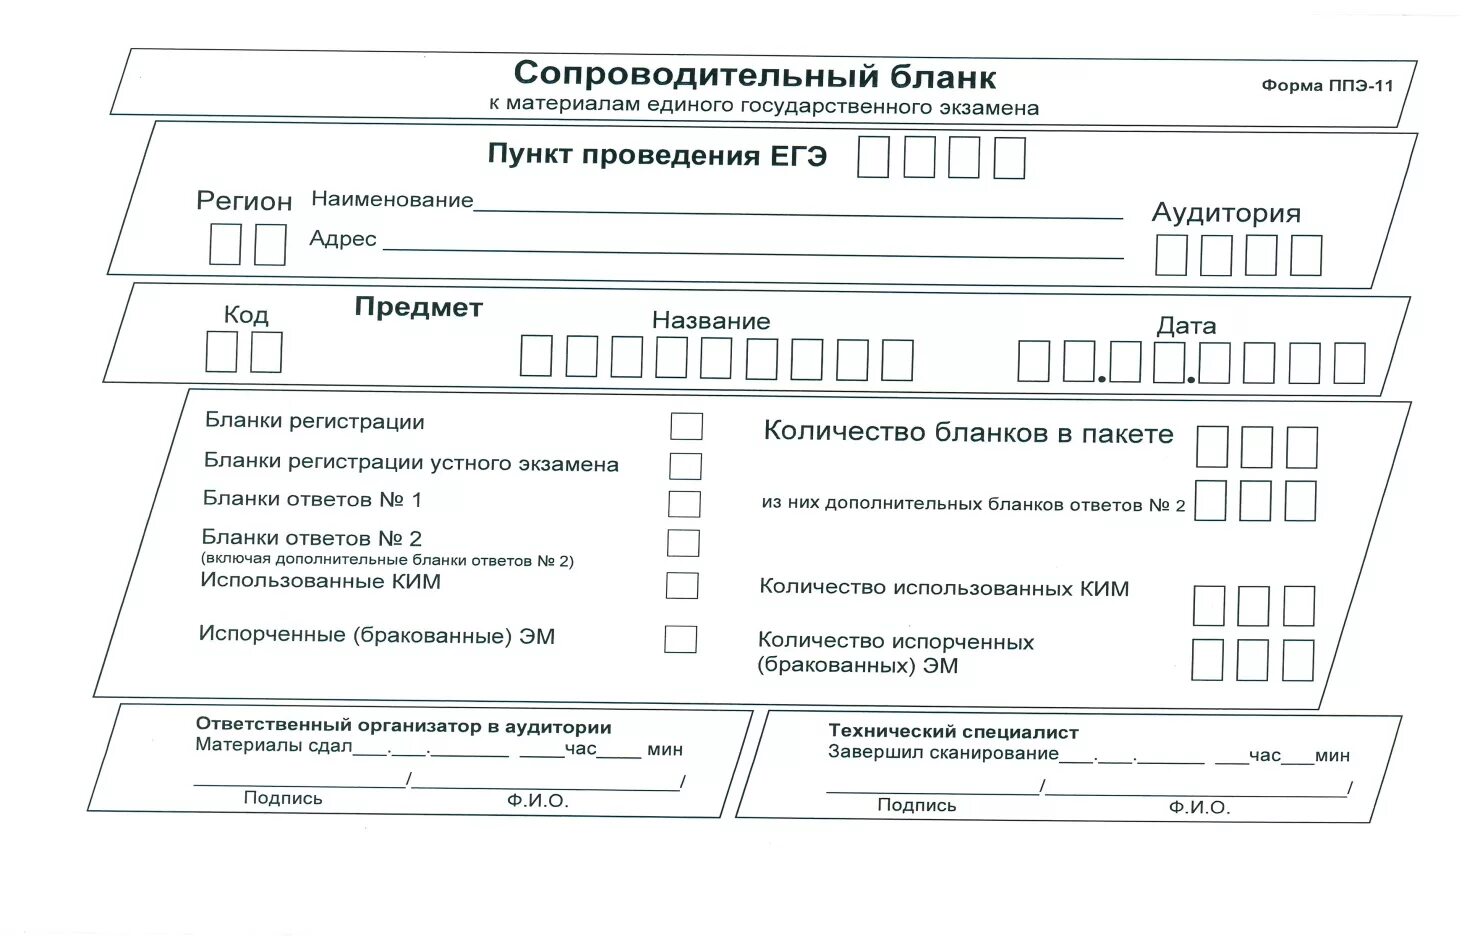 Рцои результаты итогового собеседования 2024 московская область. Форма ППЭ -11 ГВЭ 11. Сопроводительный бланк к материалам ЕГЭ форма 11-ППЭ. Сопроводительный бланк форма 11-ППЭ. Форма ППЭ 11 доставочные возвратные пакеты.